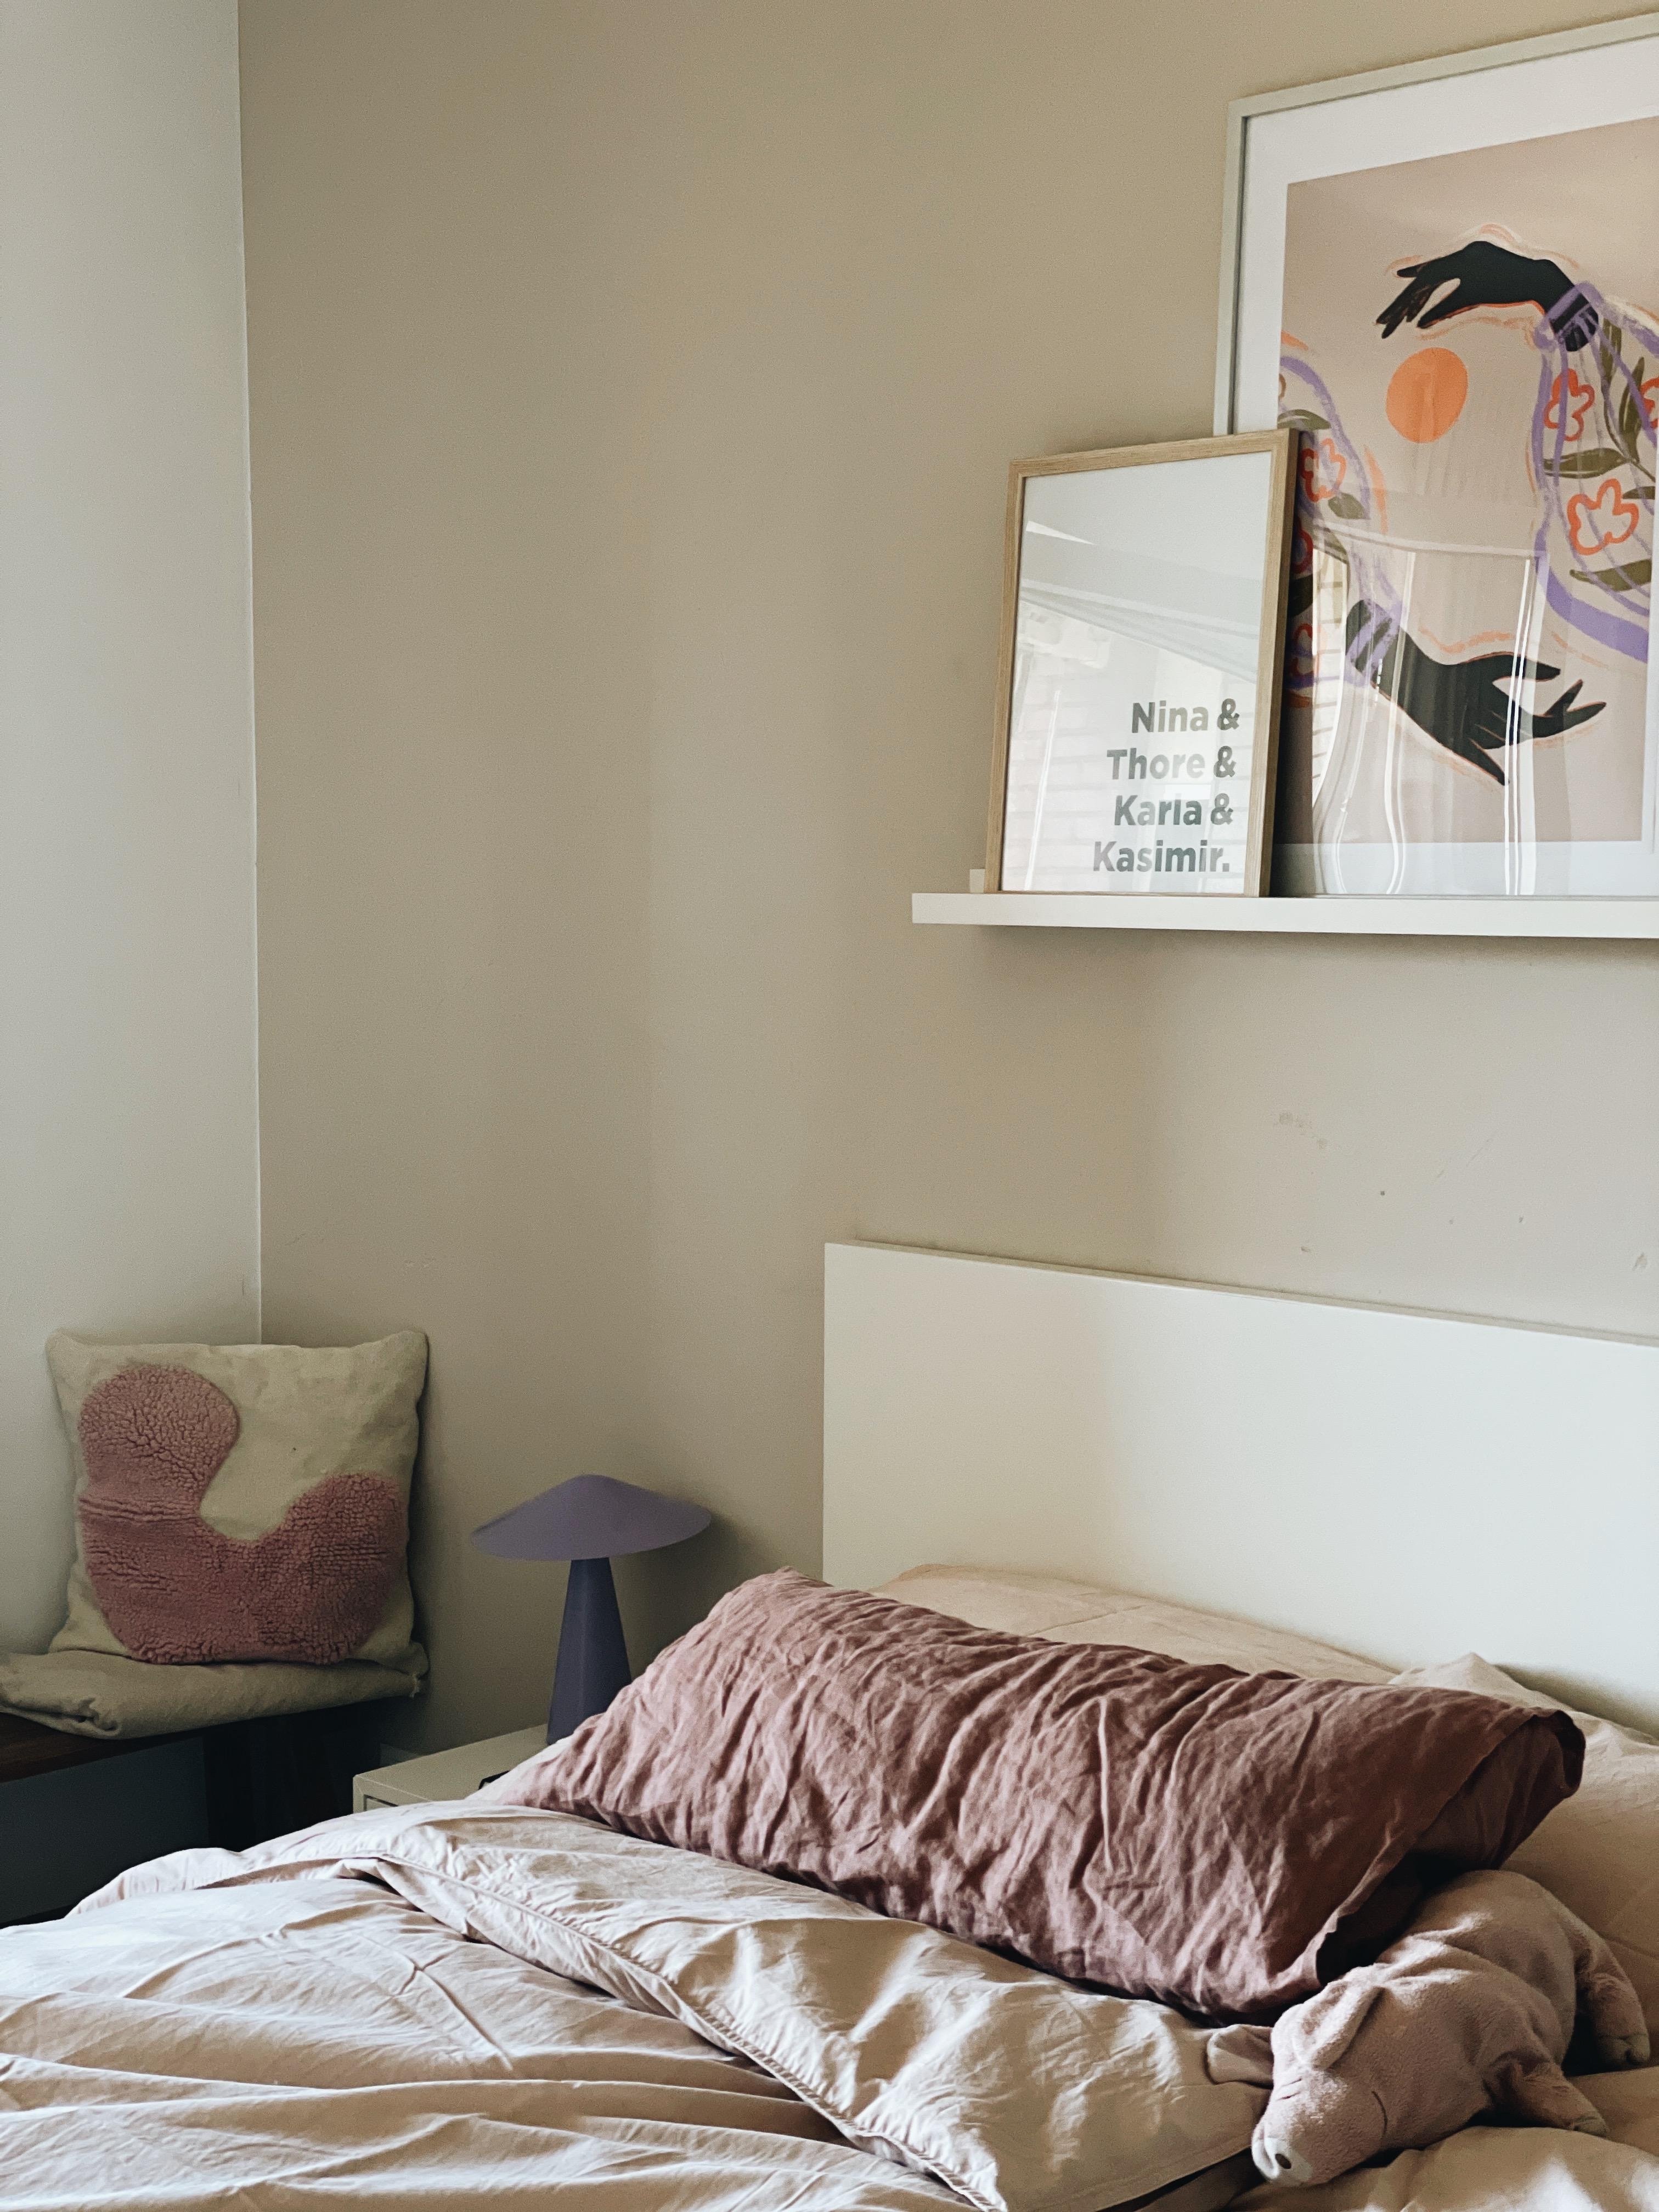 Sunday ☁️
#schlafzimmer #bedroom #cozyhome #sonntag #bilder #hygge #couchliebt 